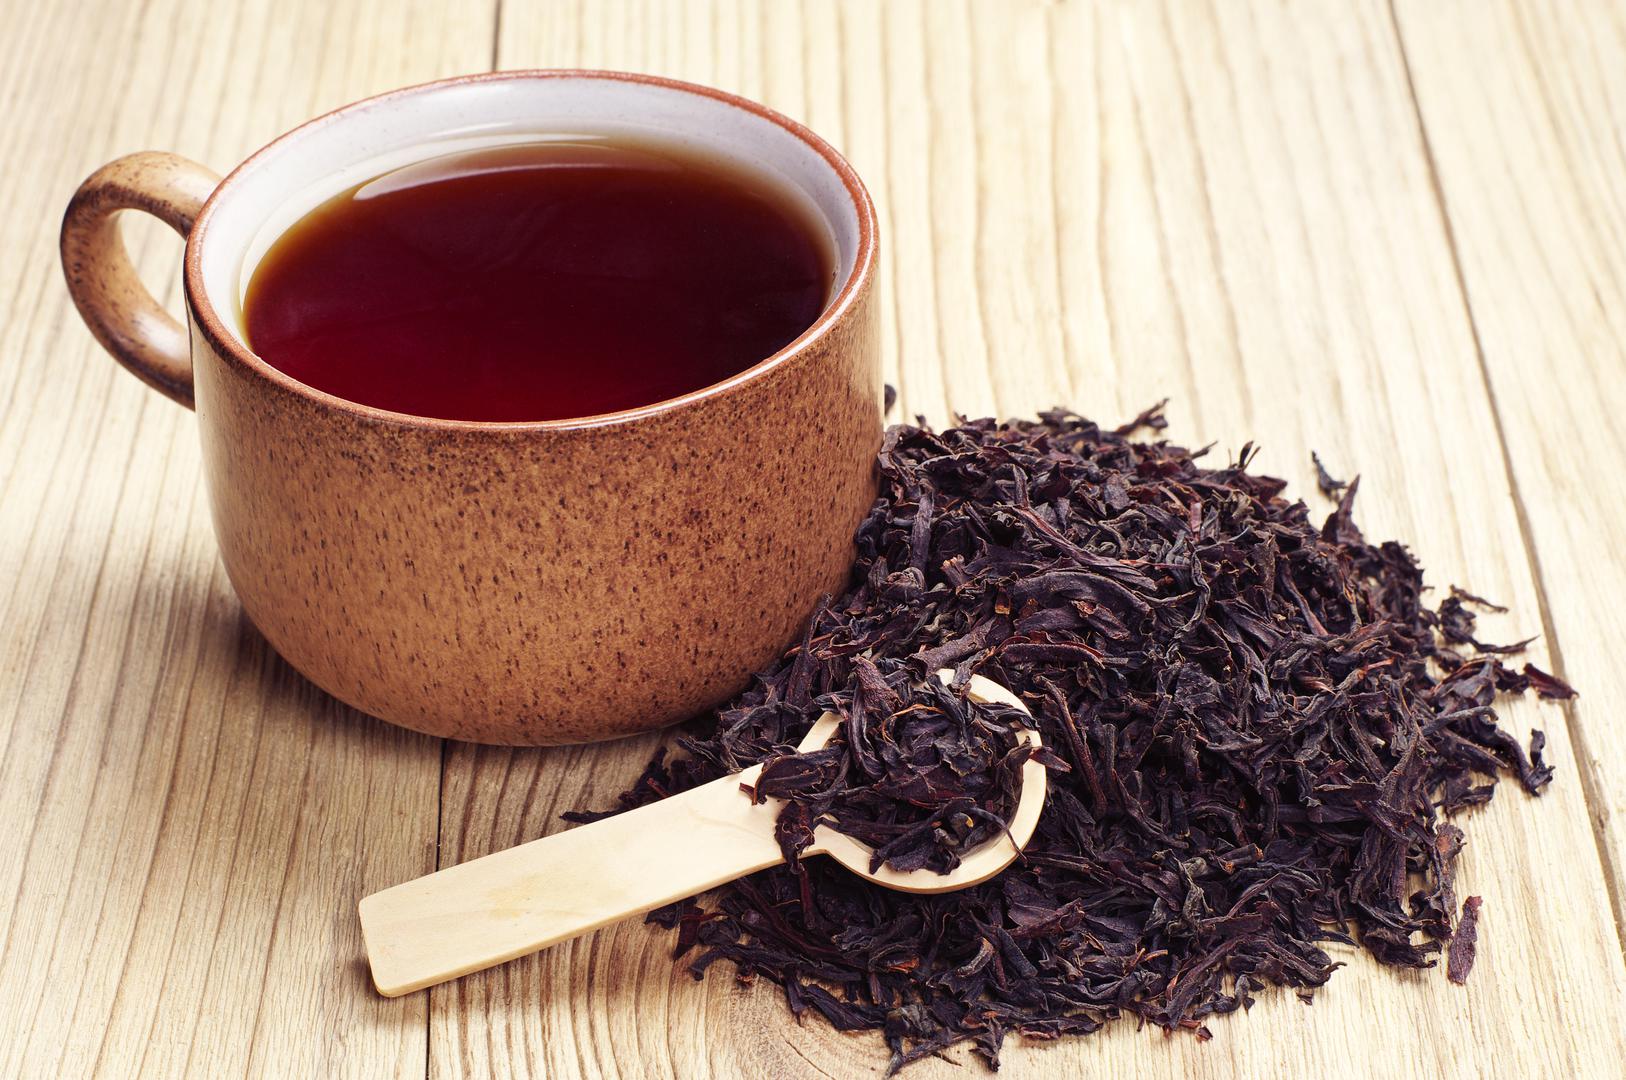 Crni čaj svakako biste trebali piti, osim što je jako ukusan, sadrži i mnogo nutritivnih sastojaka koji pomažu u mršavljenju, sprječavanju nastanka raka, dijabetesa. 

